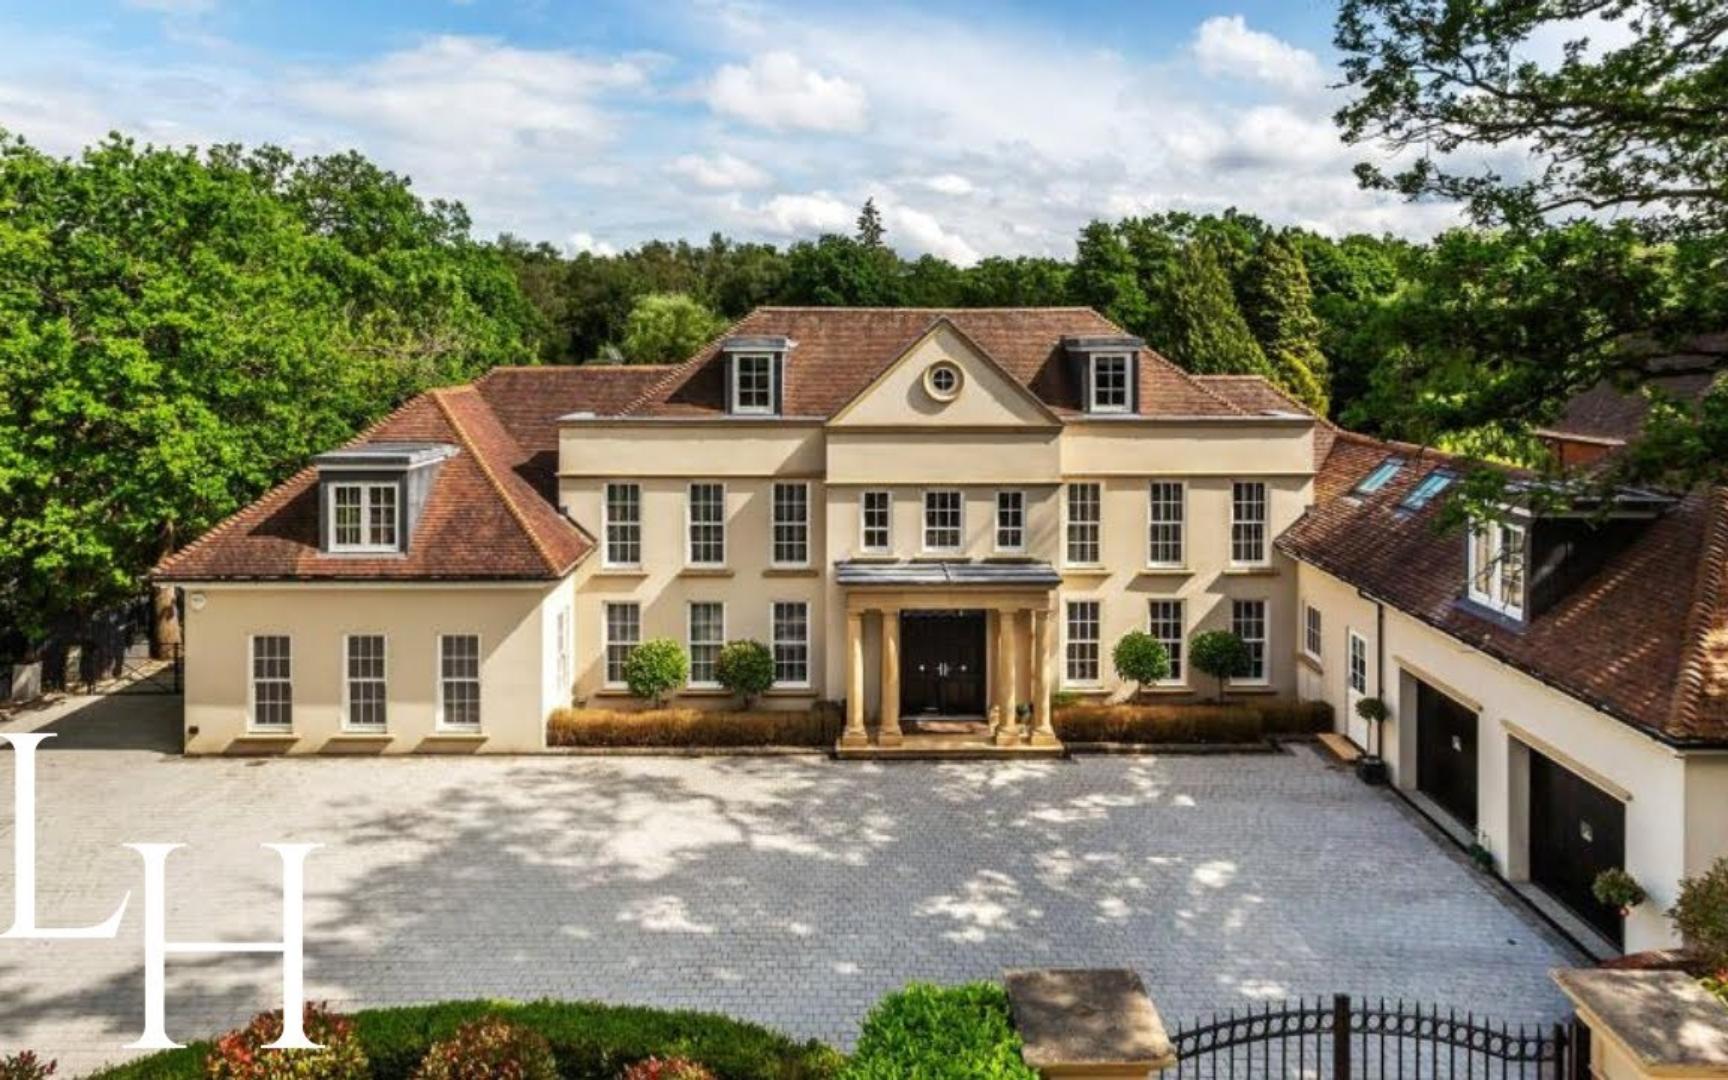 【lh】参观英国萨里价值500万英镑带室内泳池的豪华乡村别墅